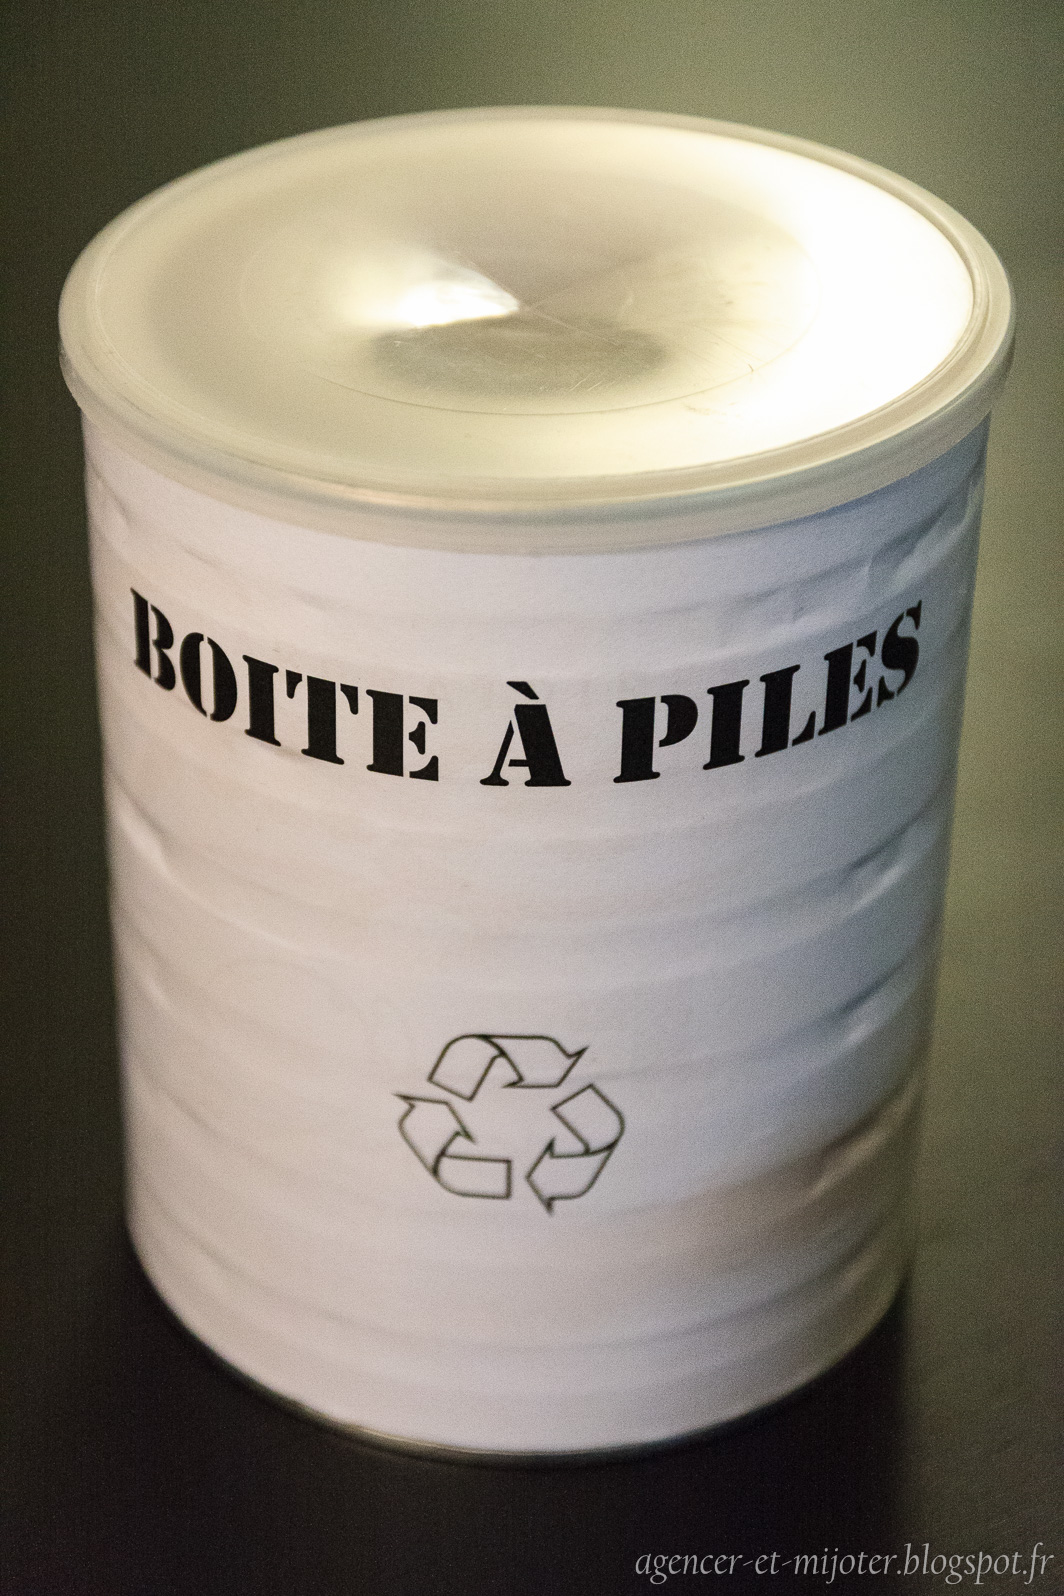 Agencer et Mijoter: DIY : Boîte à recycler ses piles